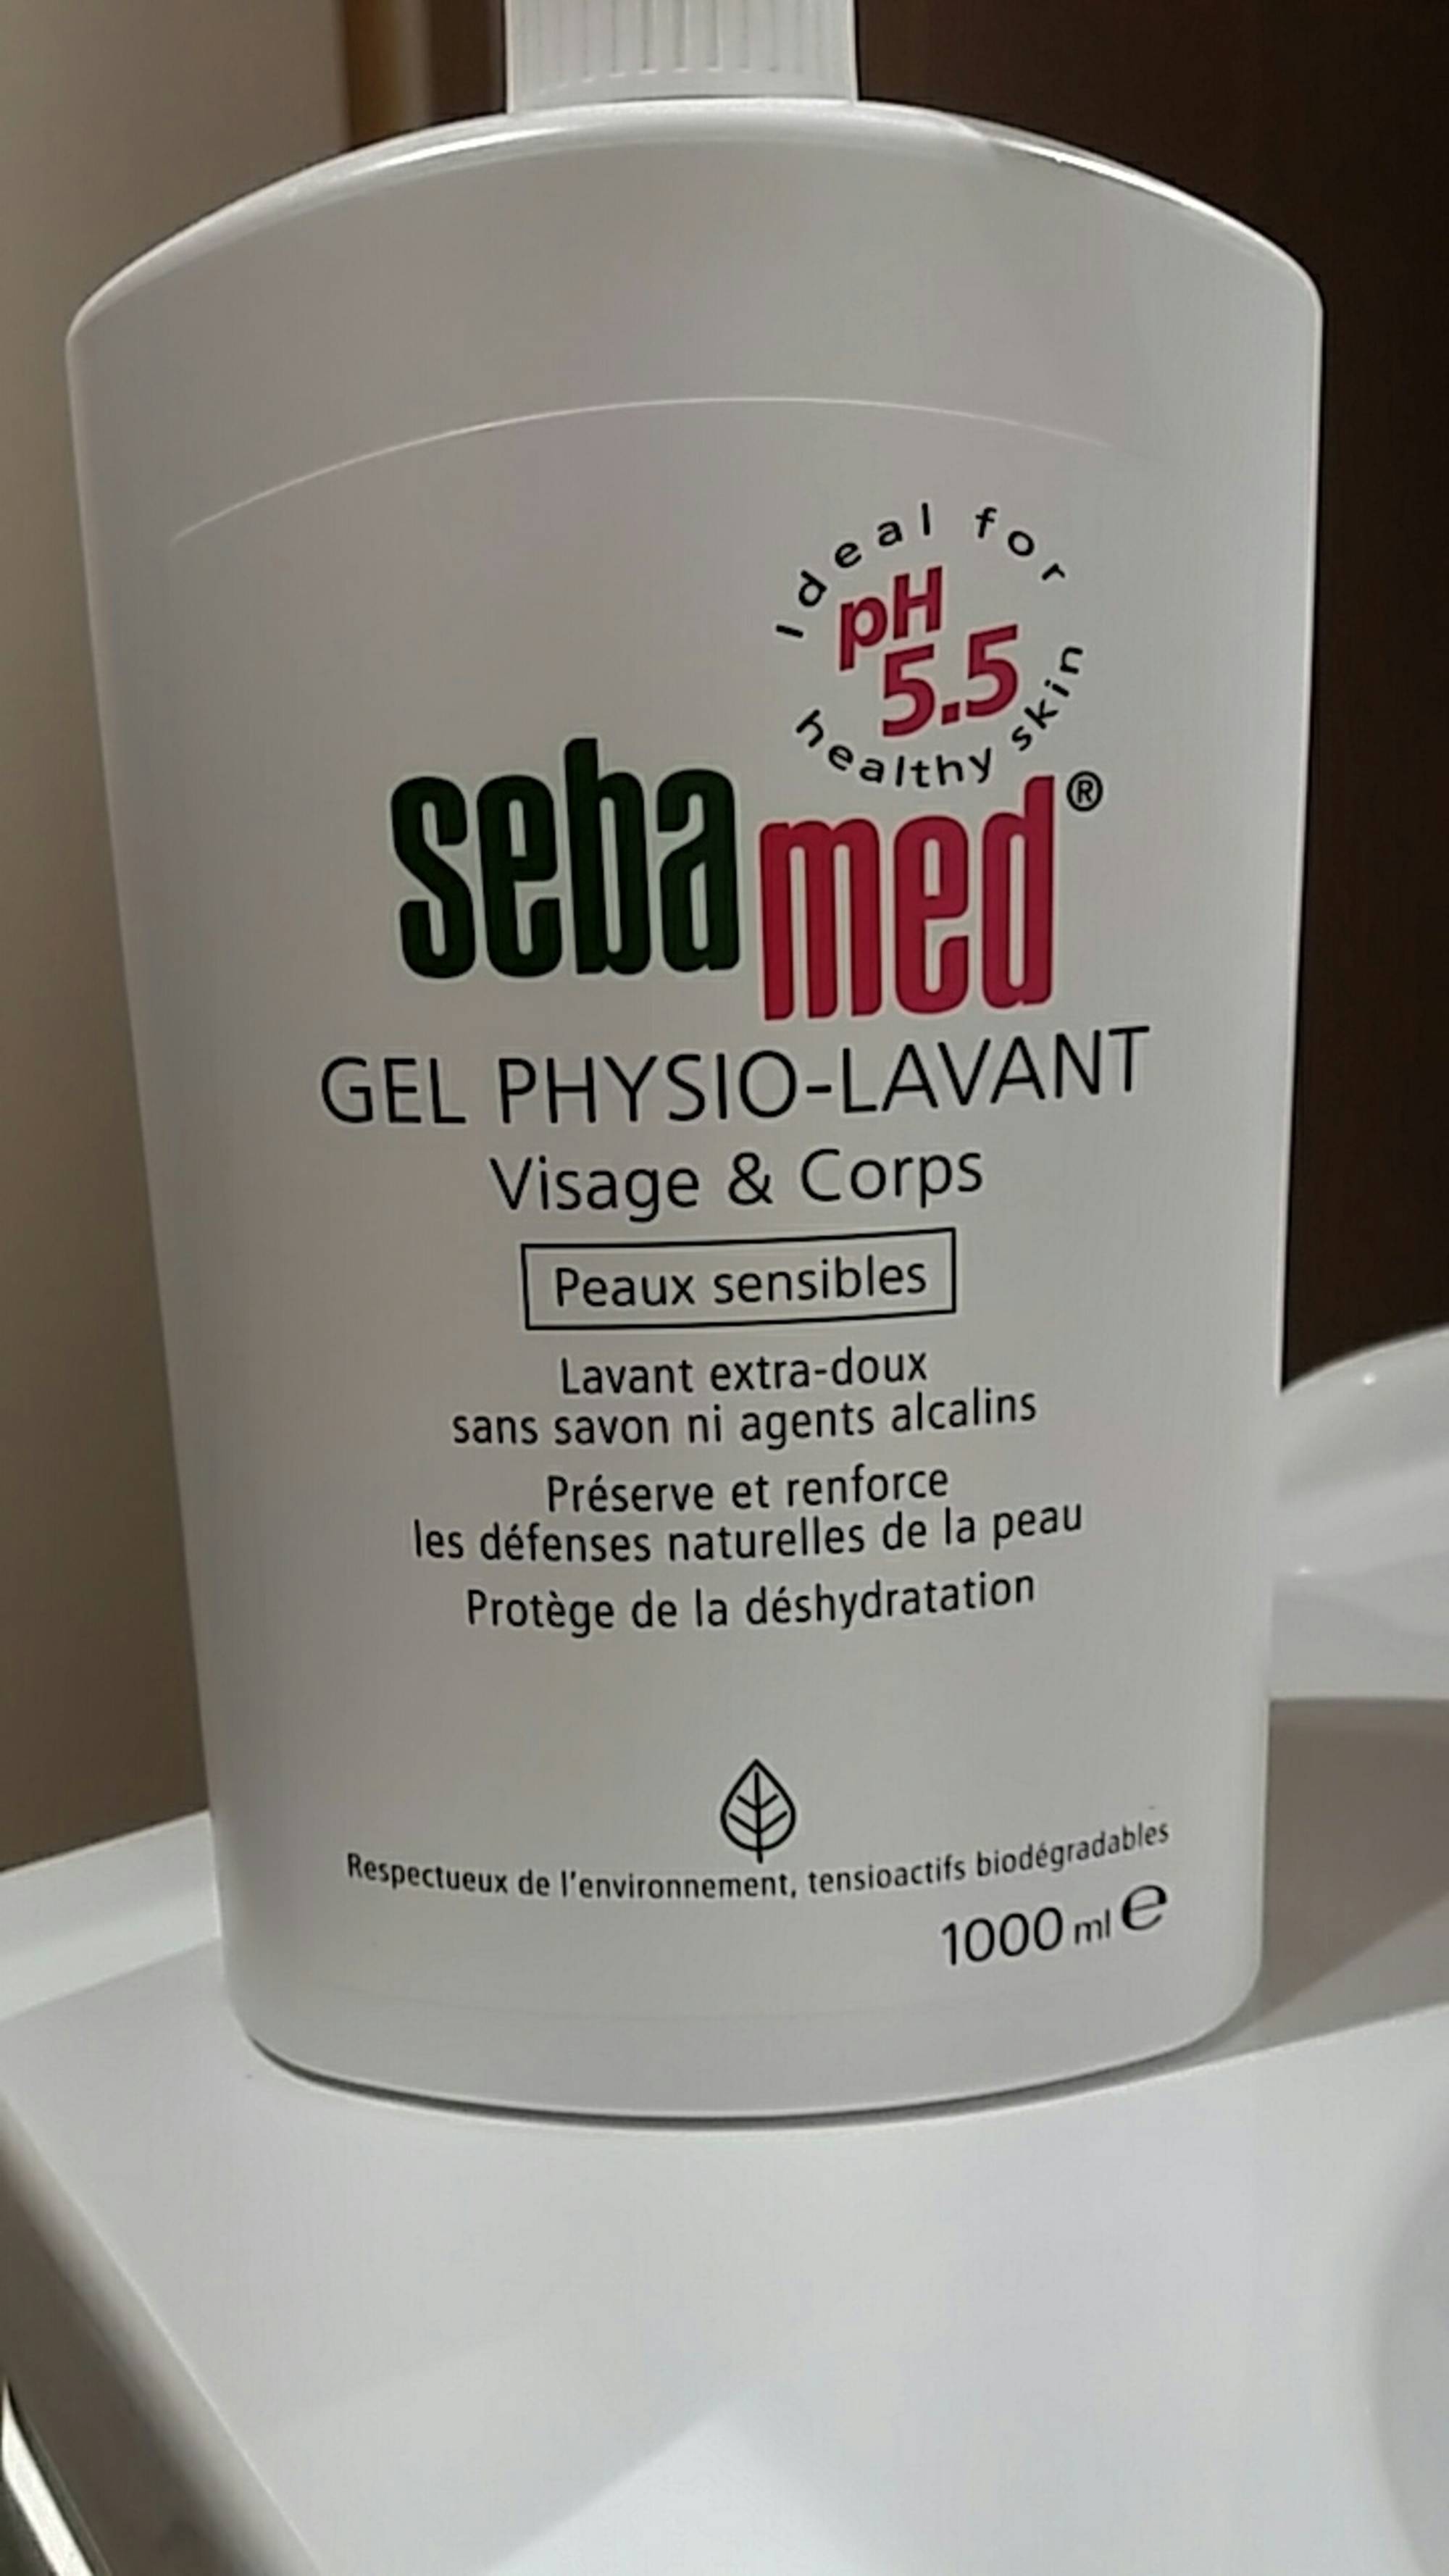 SEBAMED - Gel physio-lavant visage & corps peaux sensibles